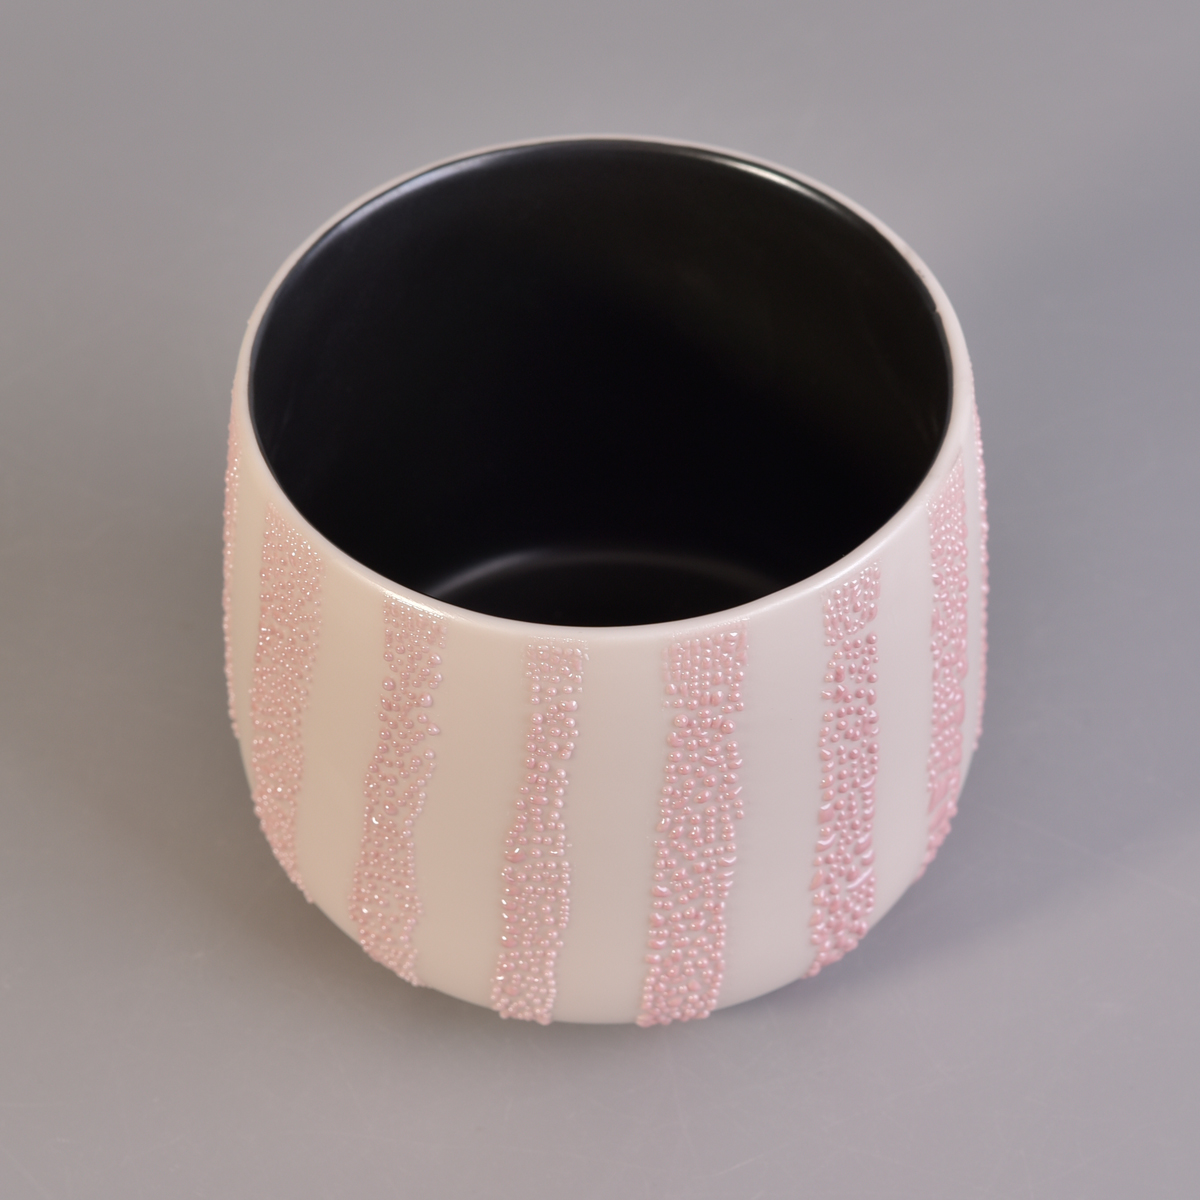 Black inside special pink ceramic glazed candle jar